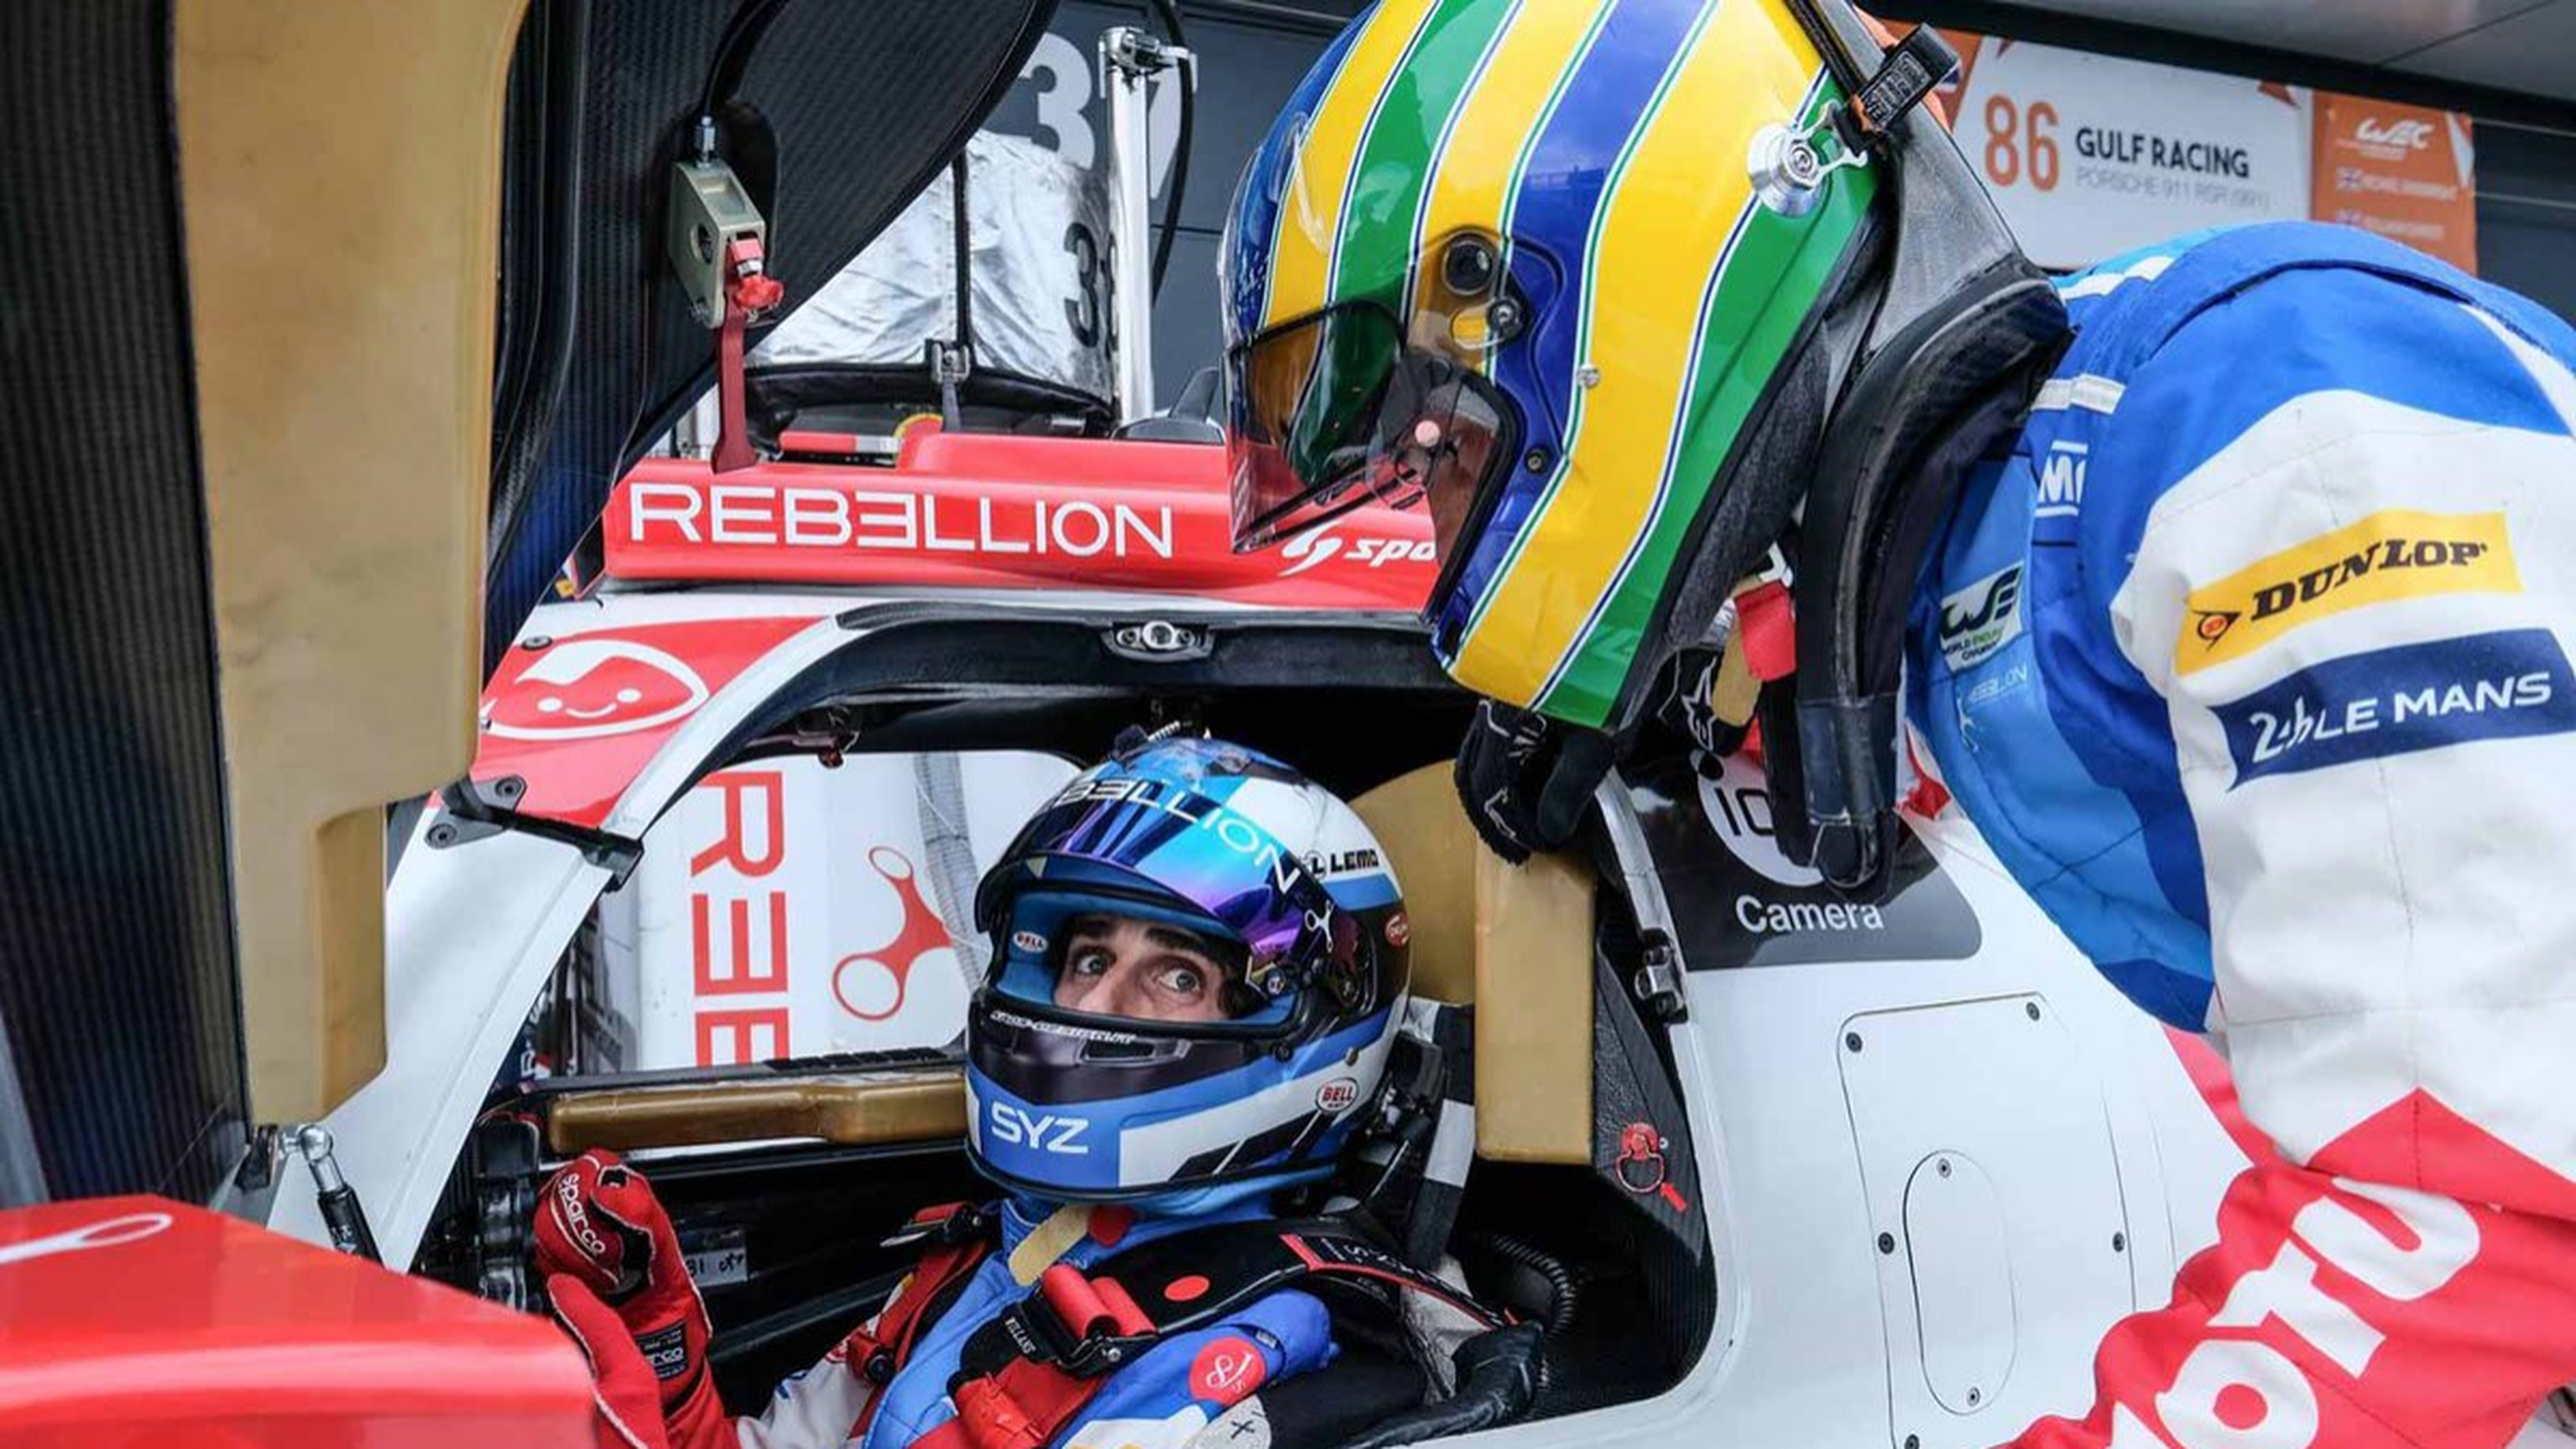 24H Le Mans 2017: Senna y Prost vuelven a ser compañeros